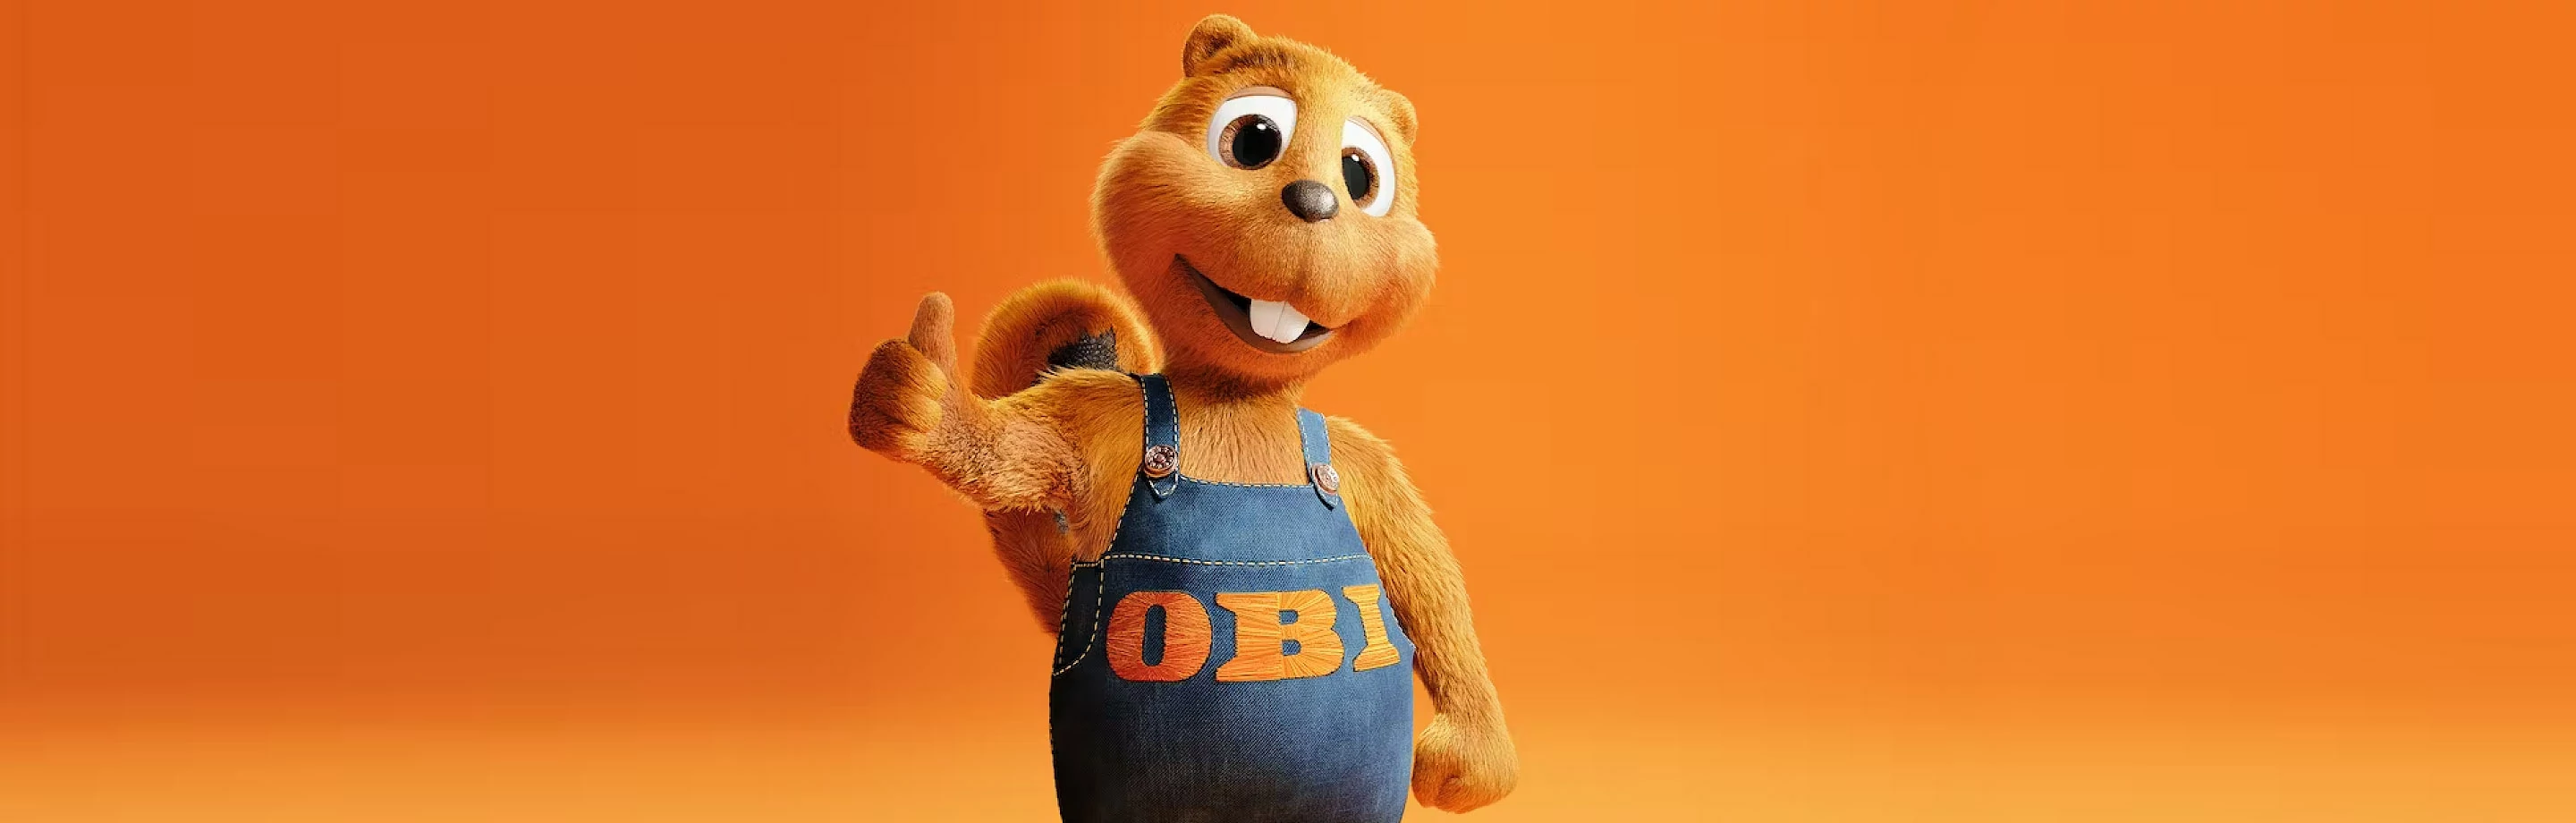 Der lachende OBI Biber in blauem Handwerker-Overall mit nach oben gerecktem Daumen vor einfarbigem orangenem Hintergrund